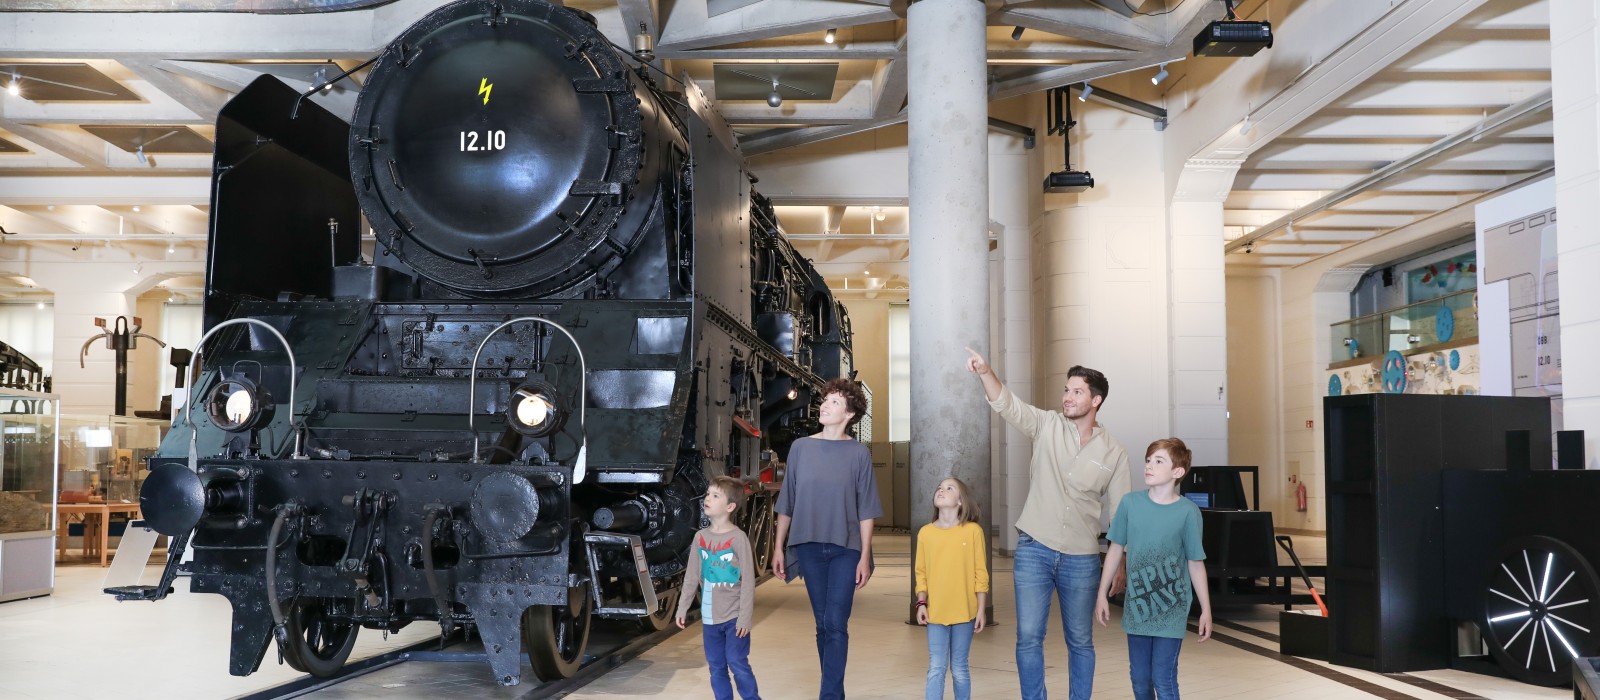 Eine Familie sieht sich gemeinsam die 12.10er Dampflokomotive an. In der Ausstellung "12.10 eine Dampflokomotive der Superlative" : 